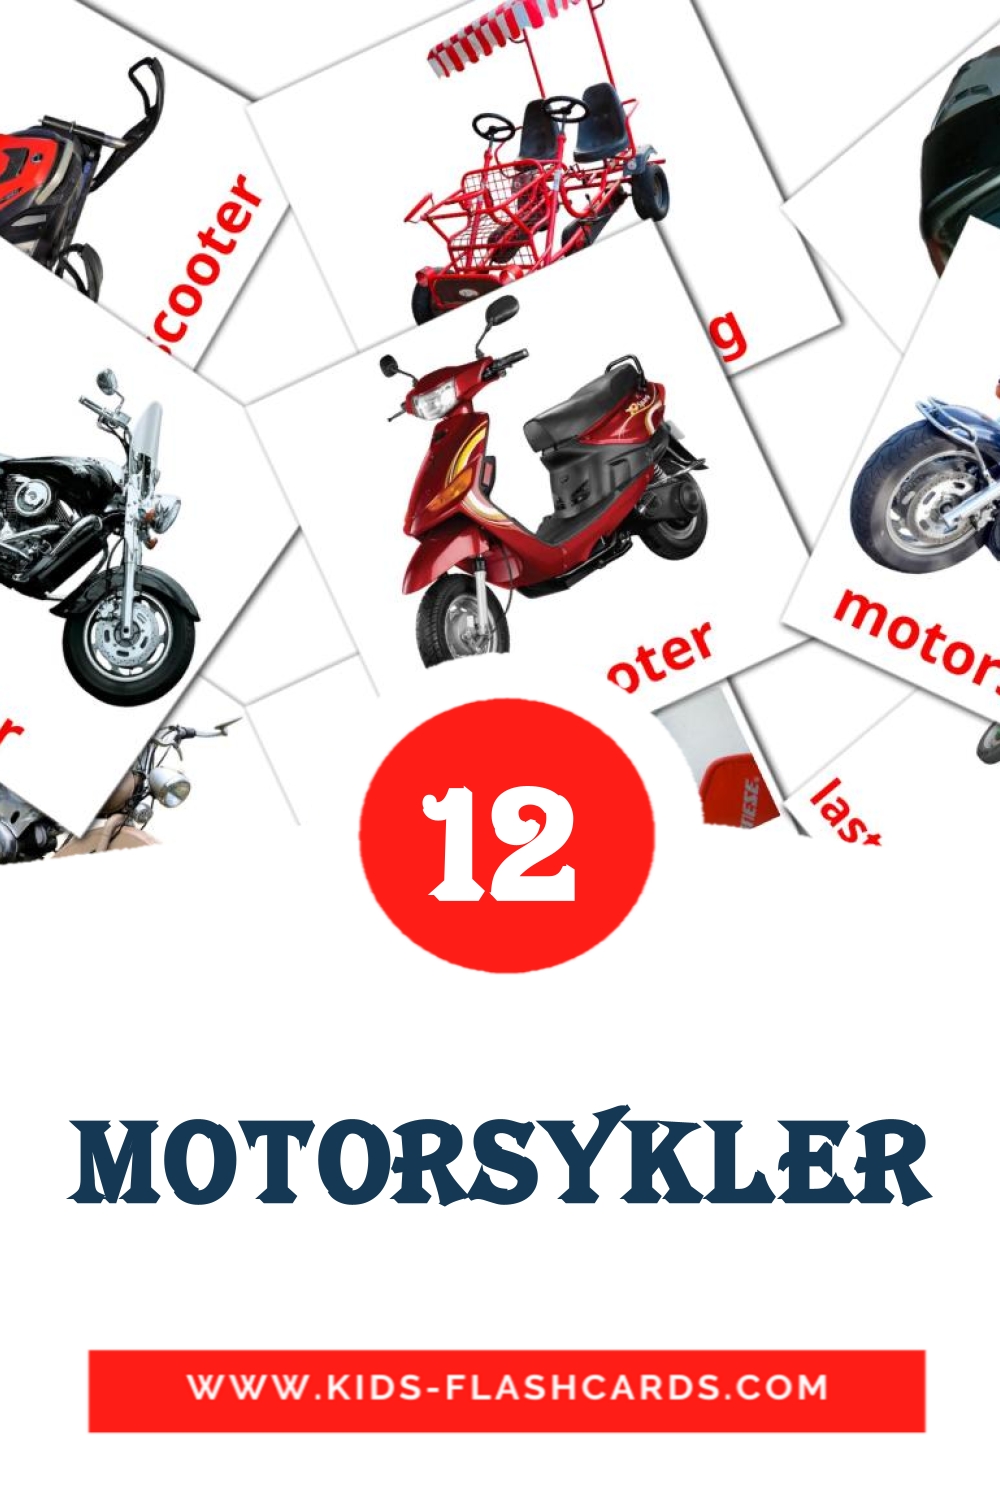 12 Motorsykler Picture Cards for Kindergarden in norwegian